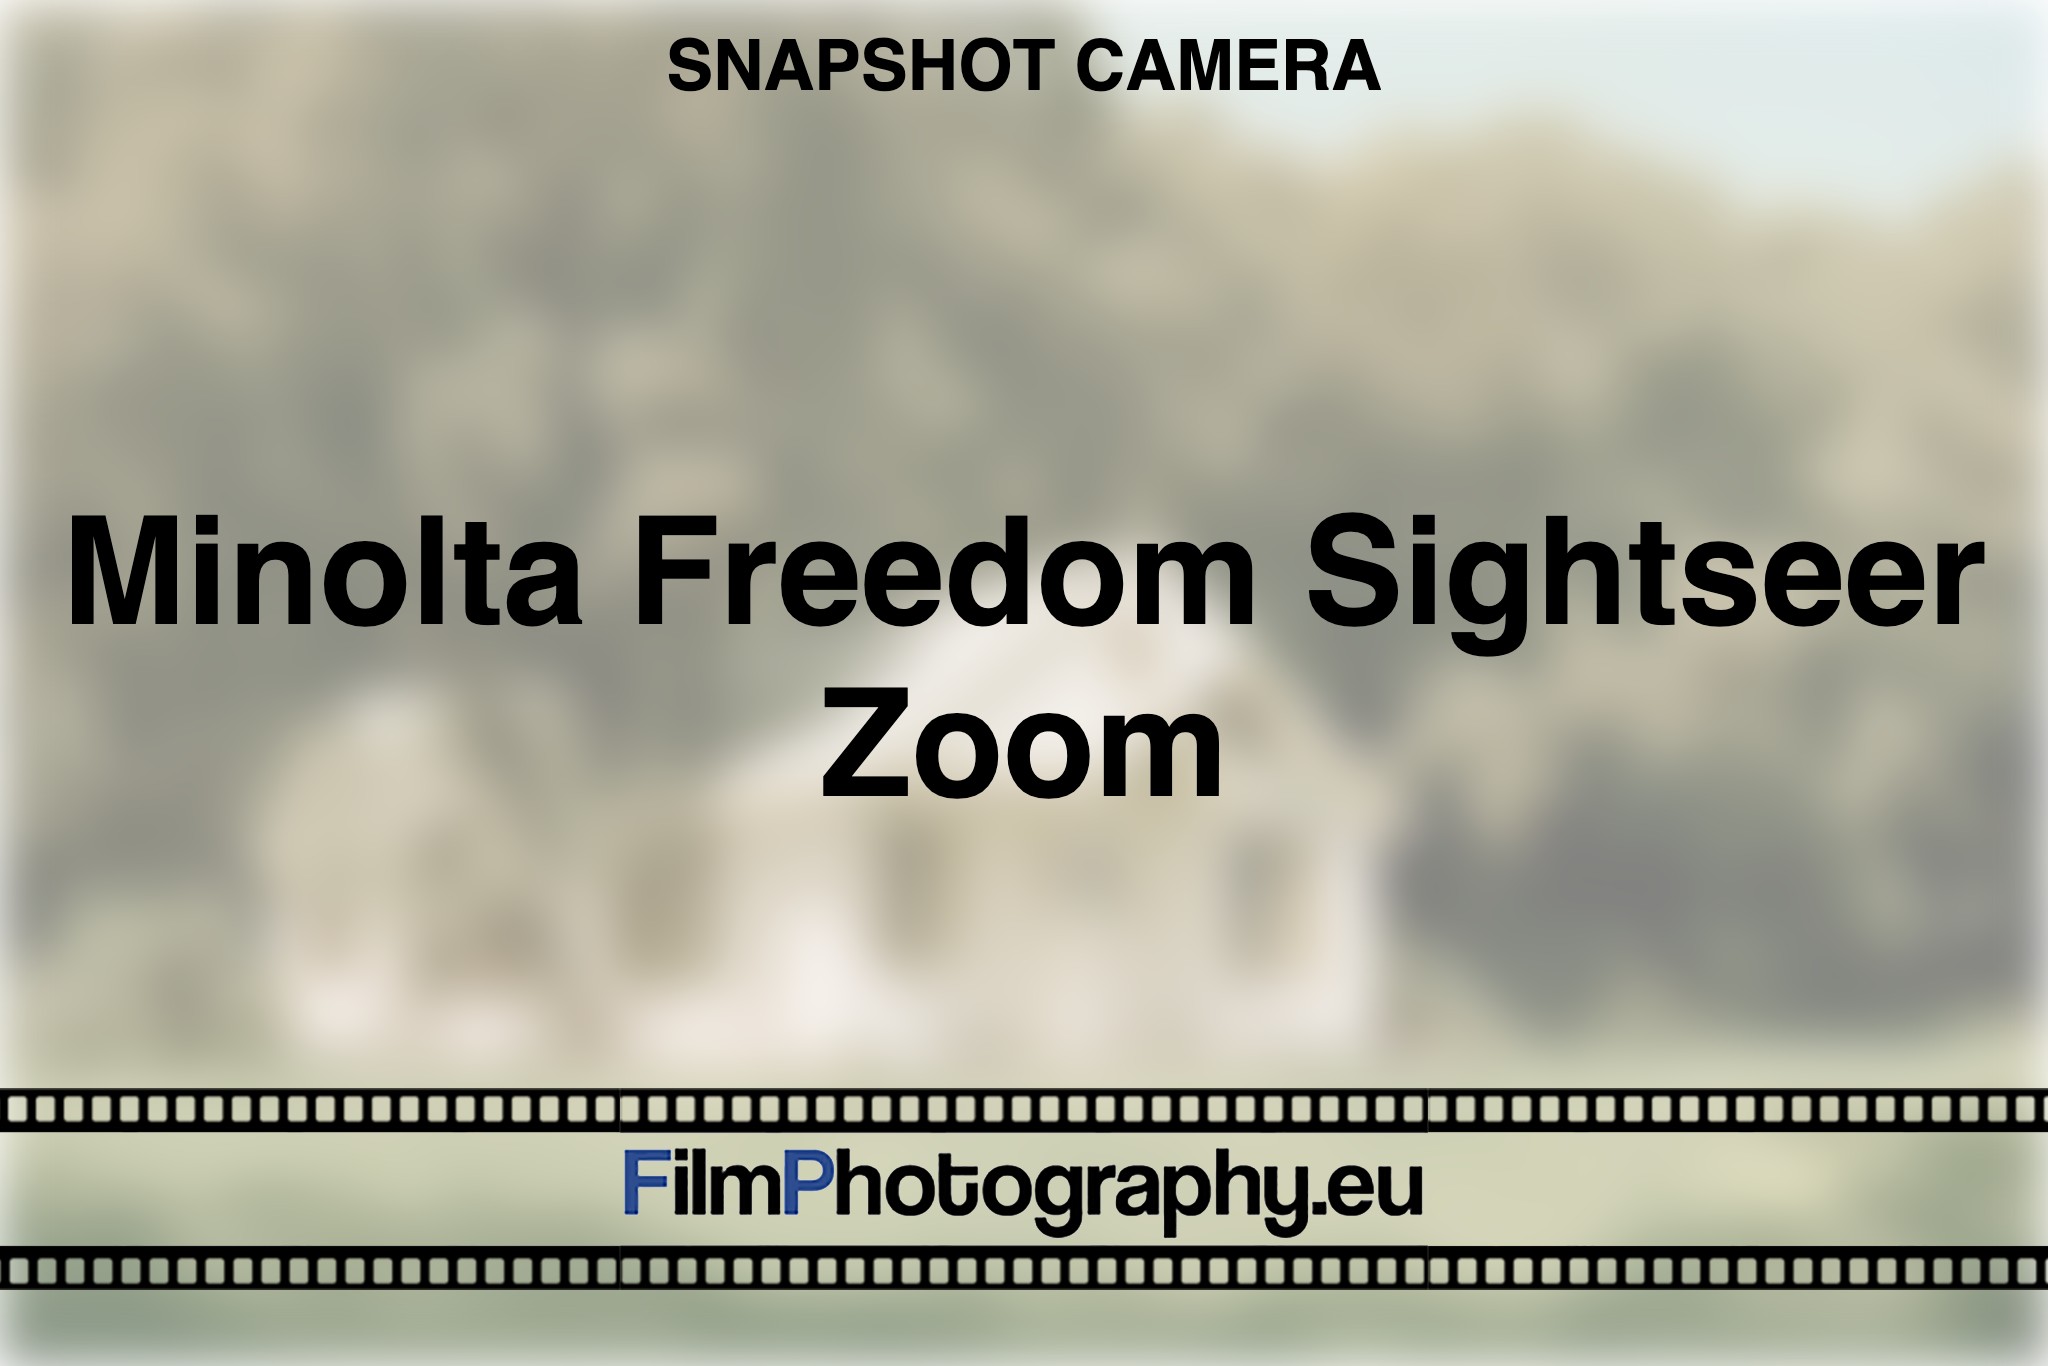 minolta-freedom-sightseer-zoom-snapshot-camera-bnv